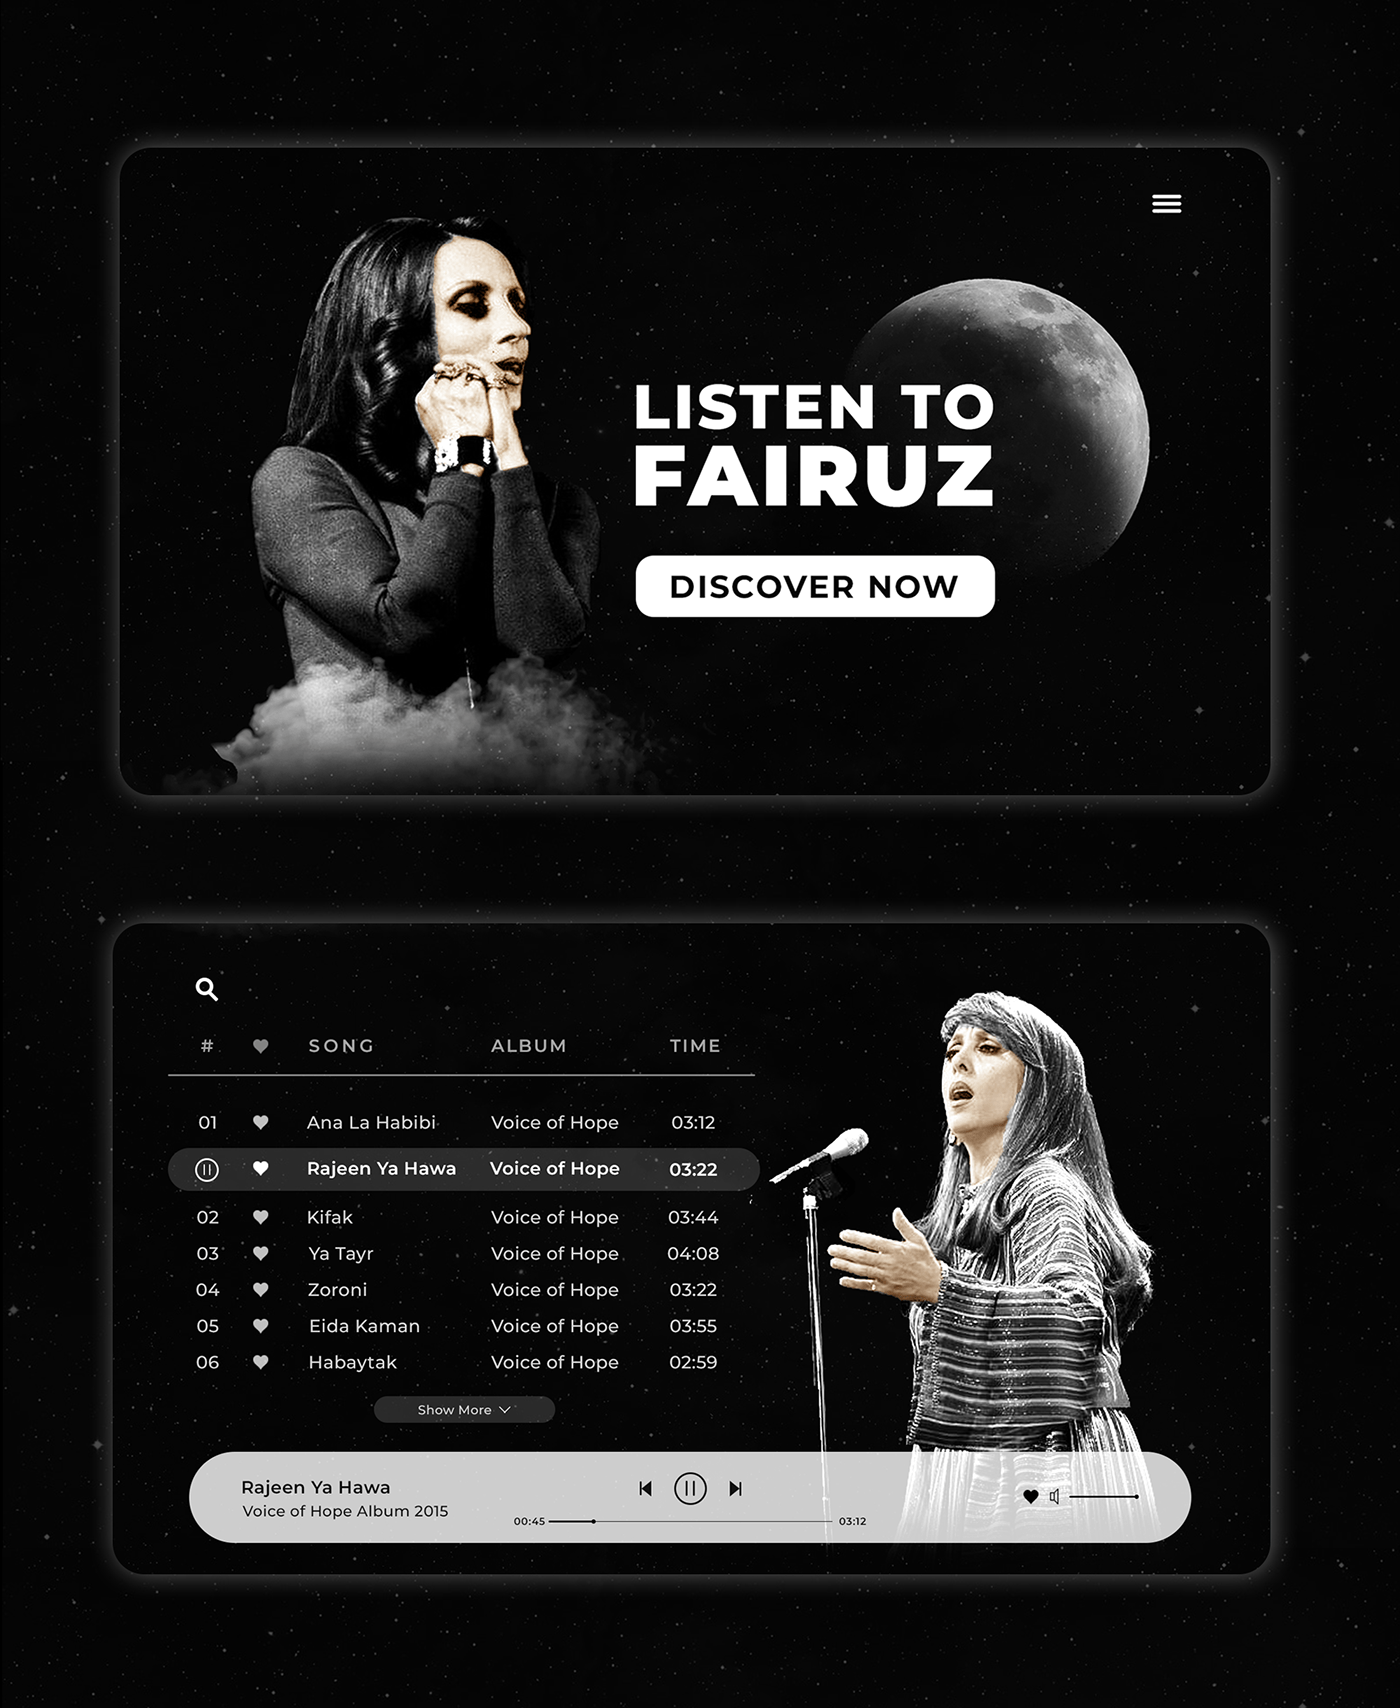 Arab arabic music Fairuz music Website discograph